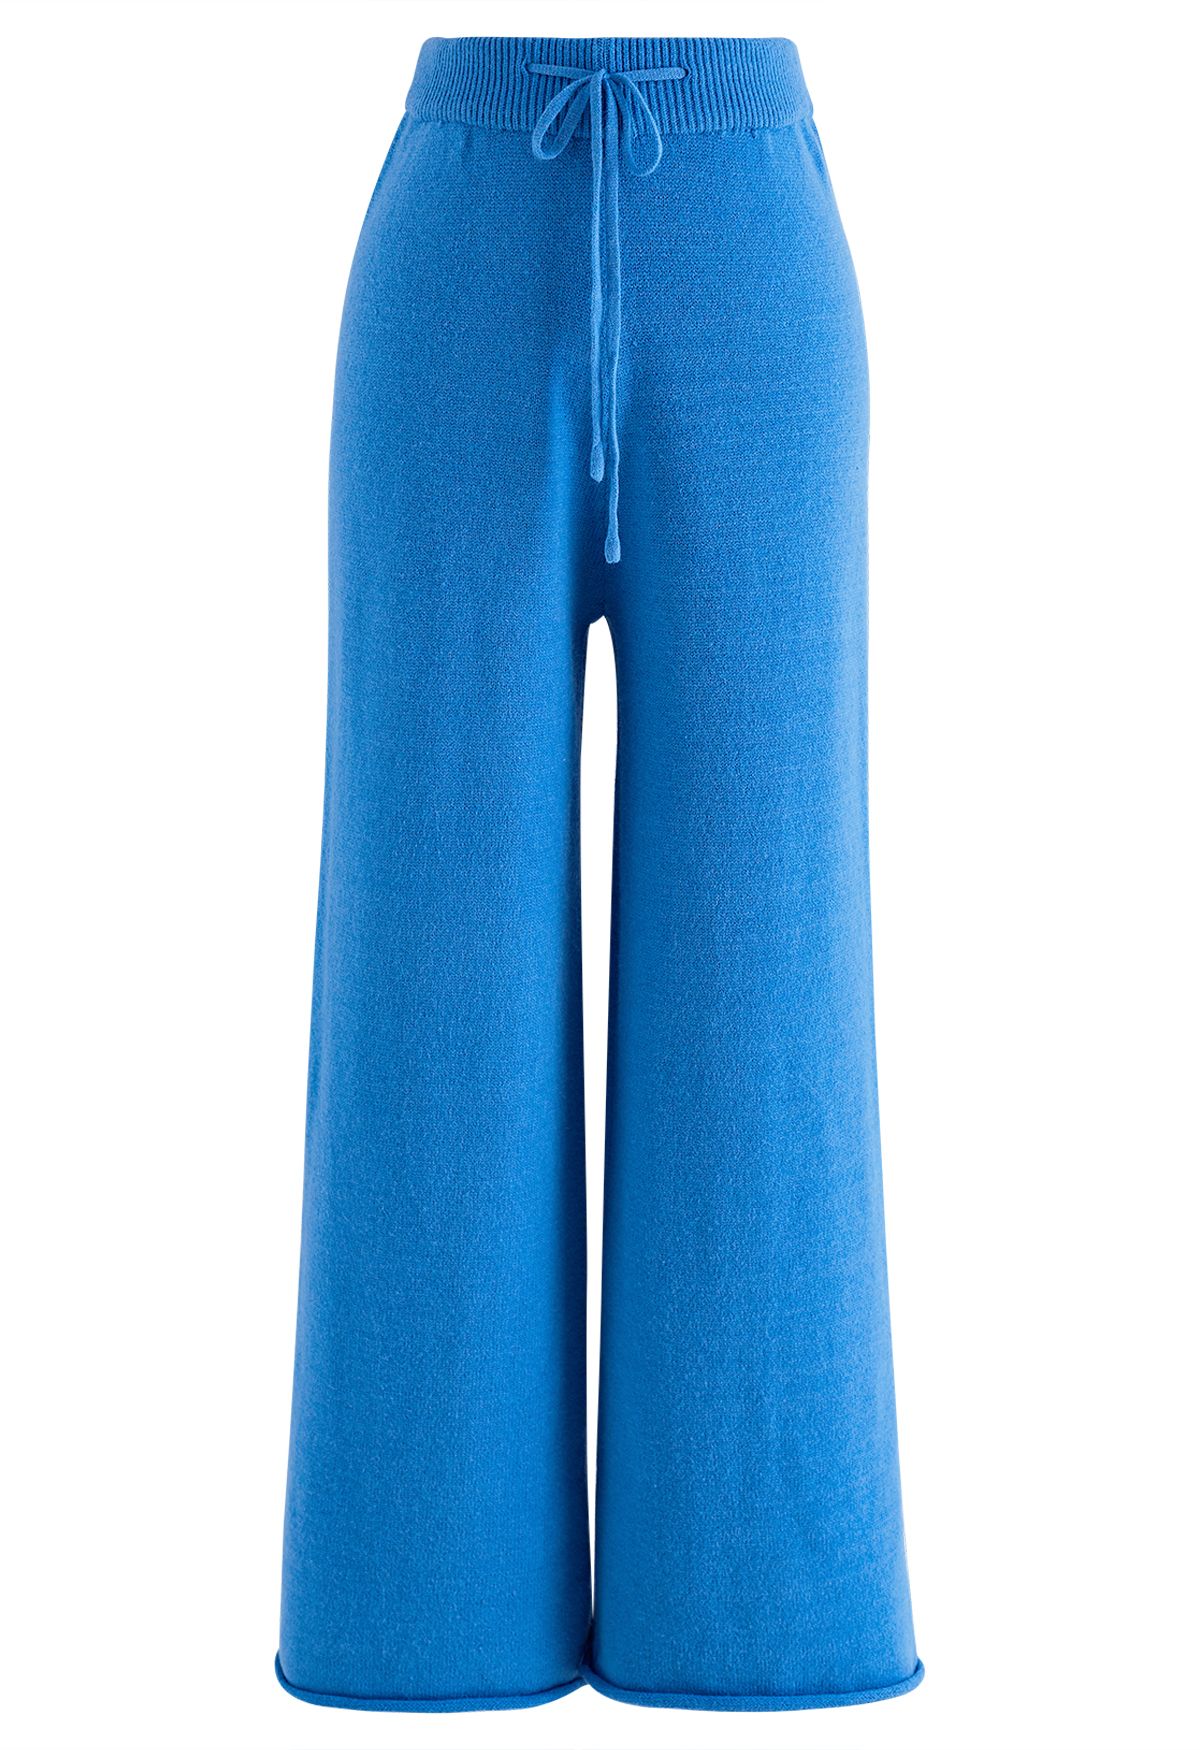 Conjunto de blusa de gola alta abotoada e calça de malha azul